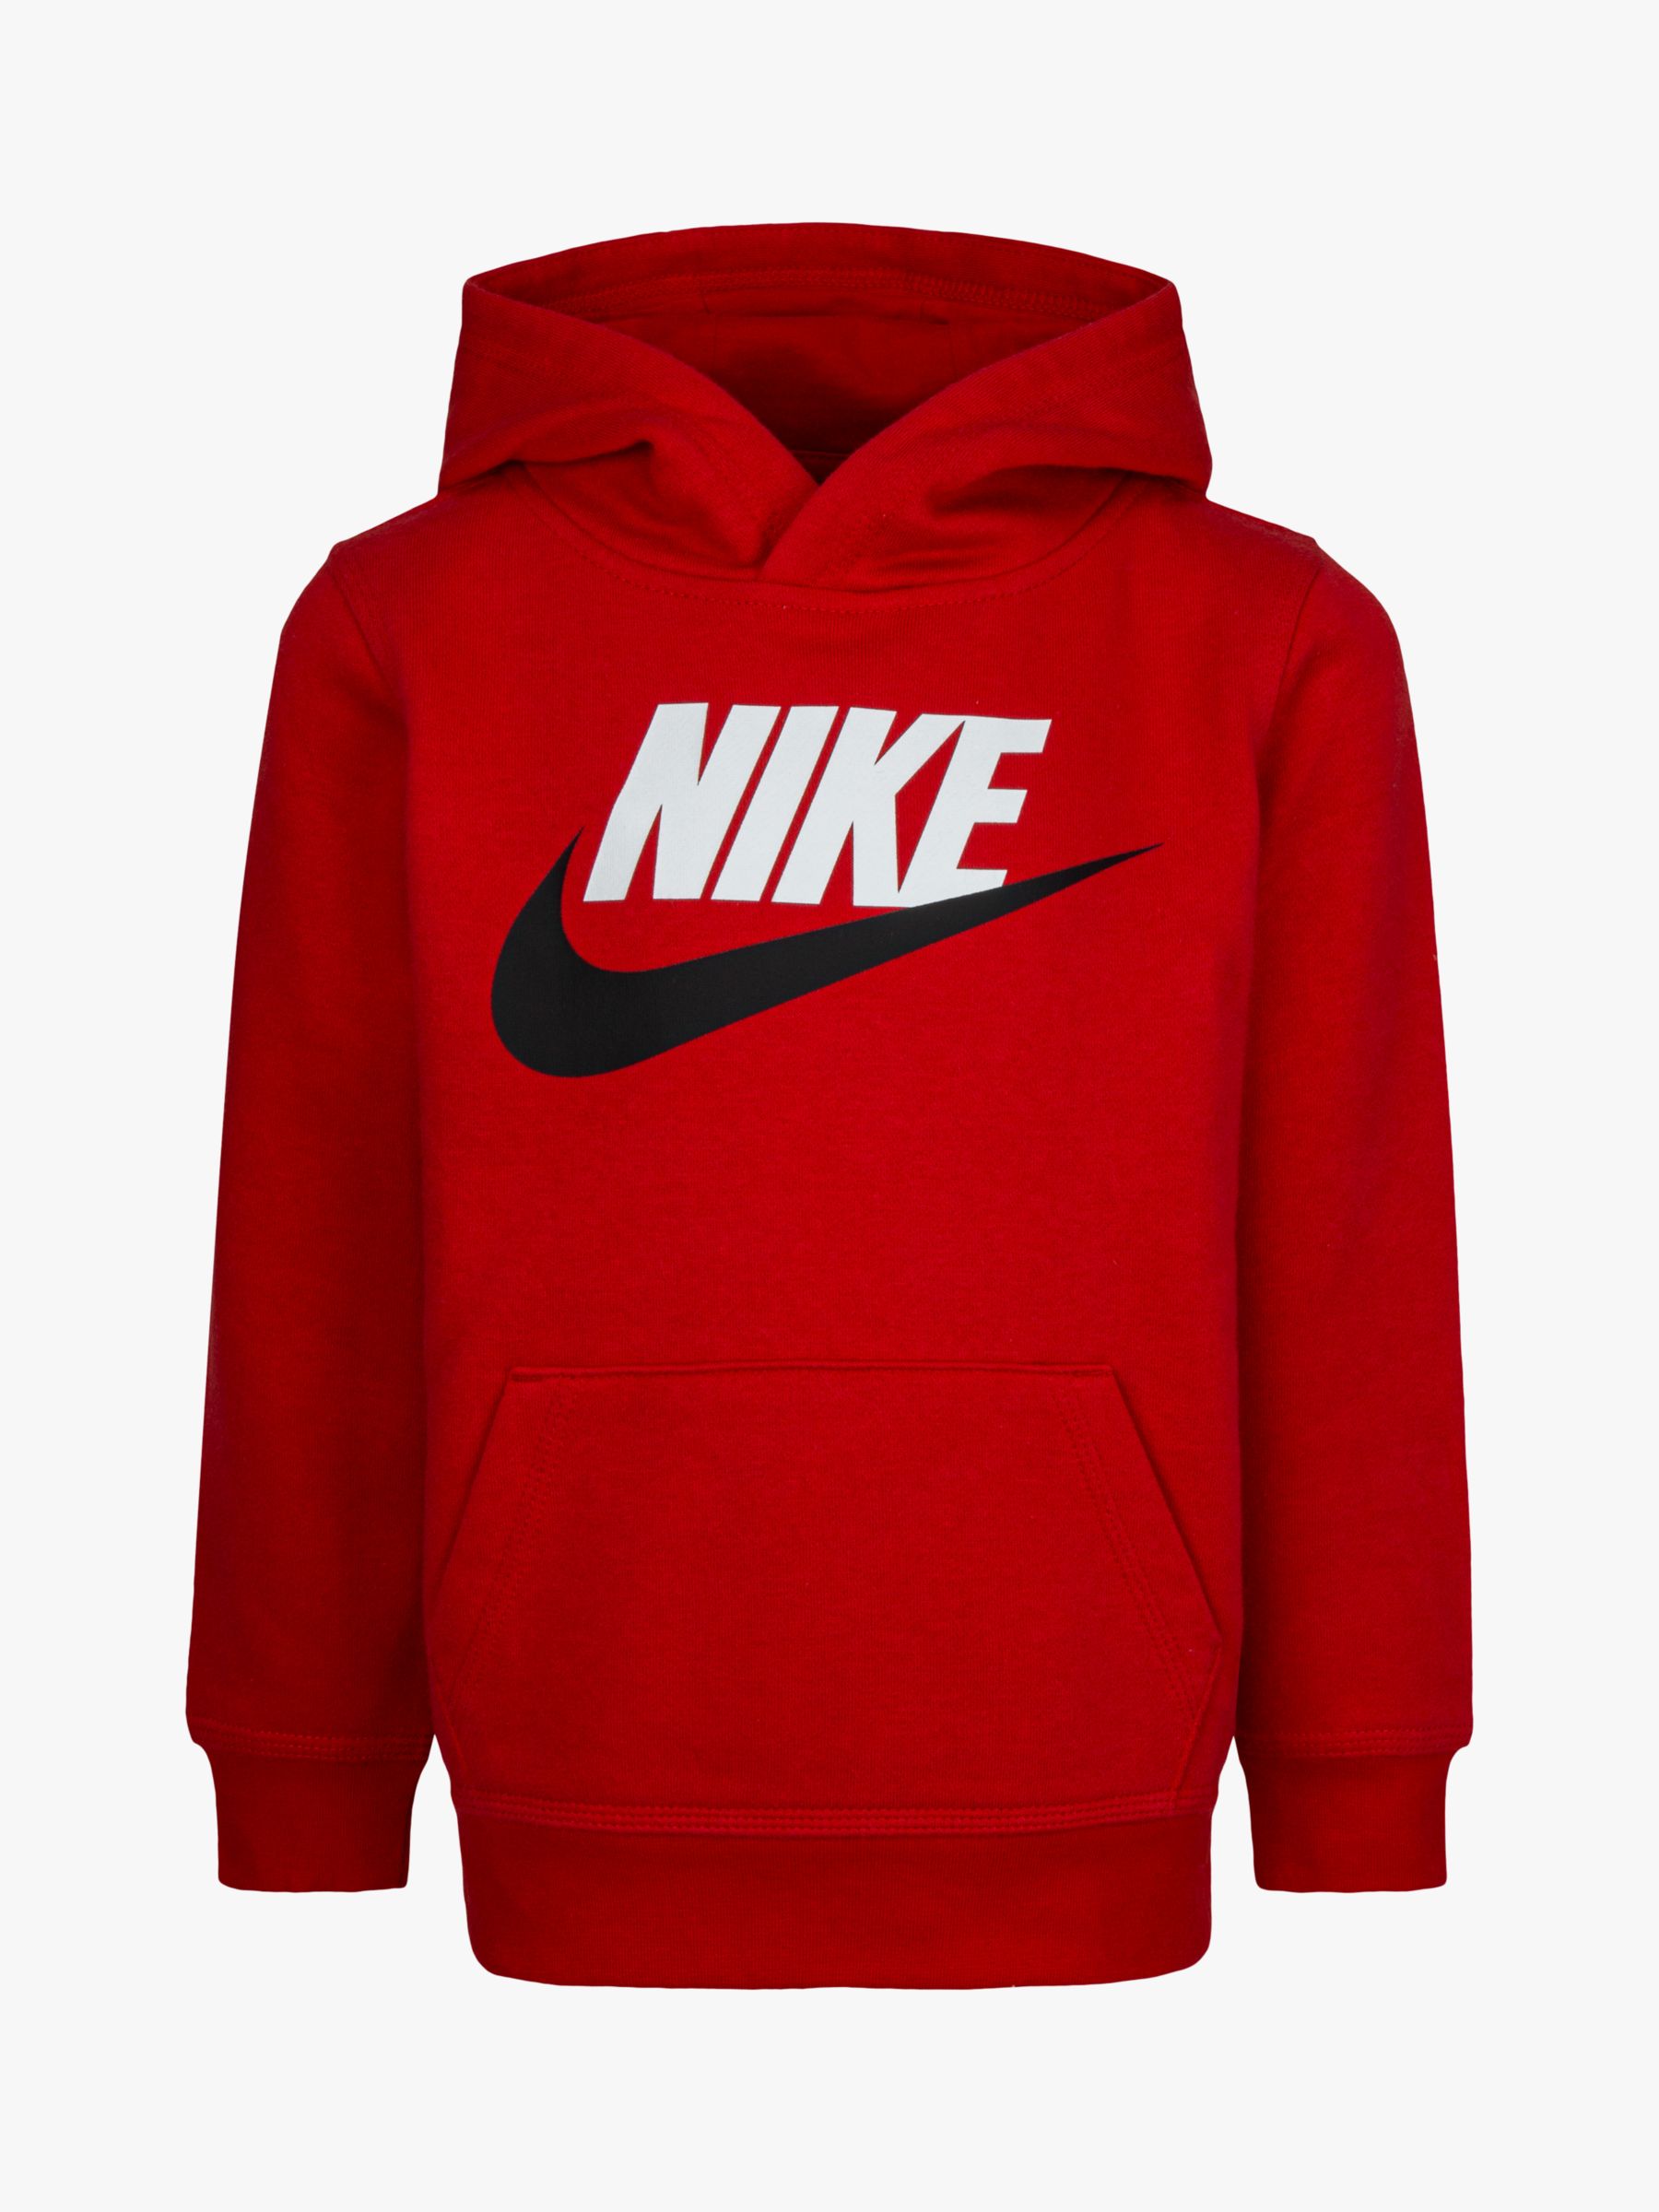 Nike Kids' Logo Hoodie, Red at John Lewis